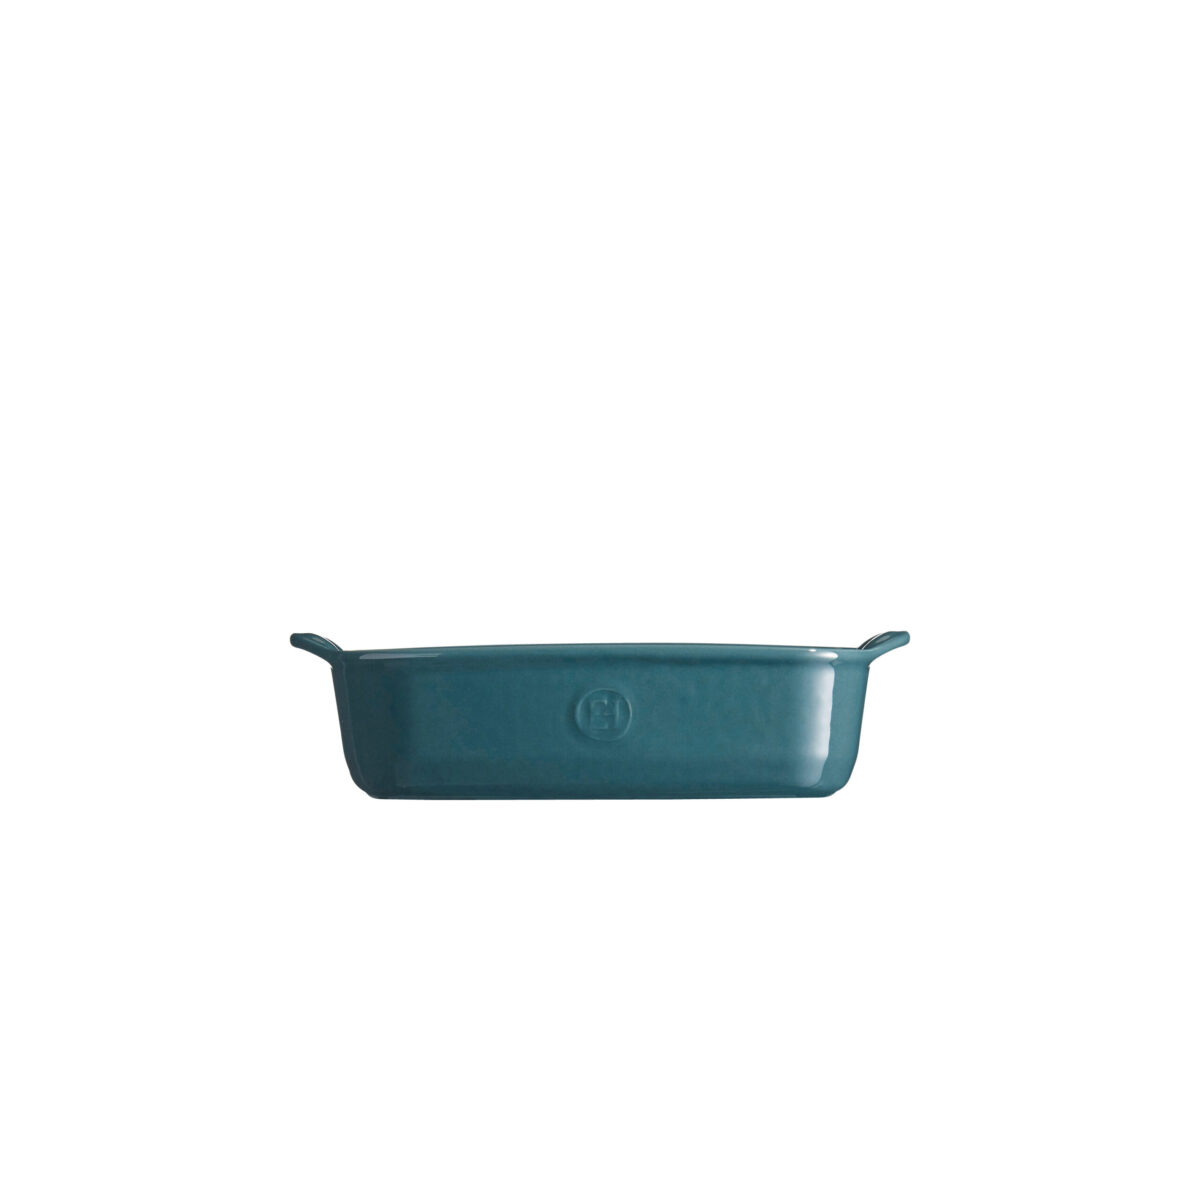 Керамична тава EMILE HENRY INDIVIDUAL OVEN DISH - 22х15 см, цвят синьо-зелен